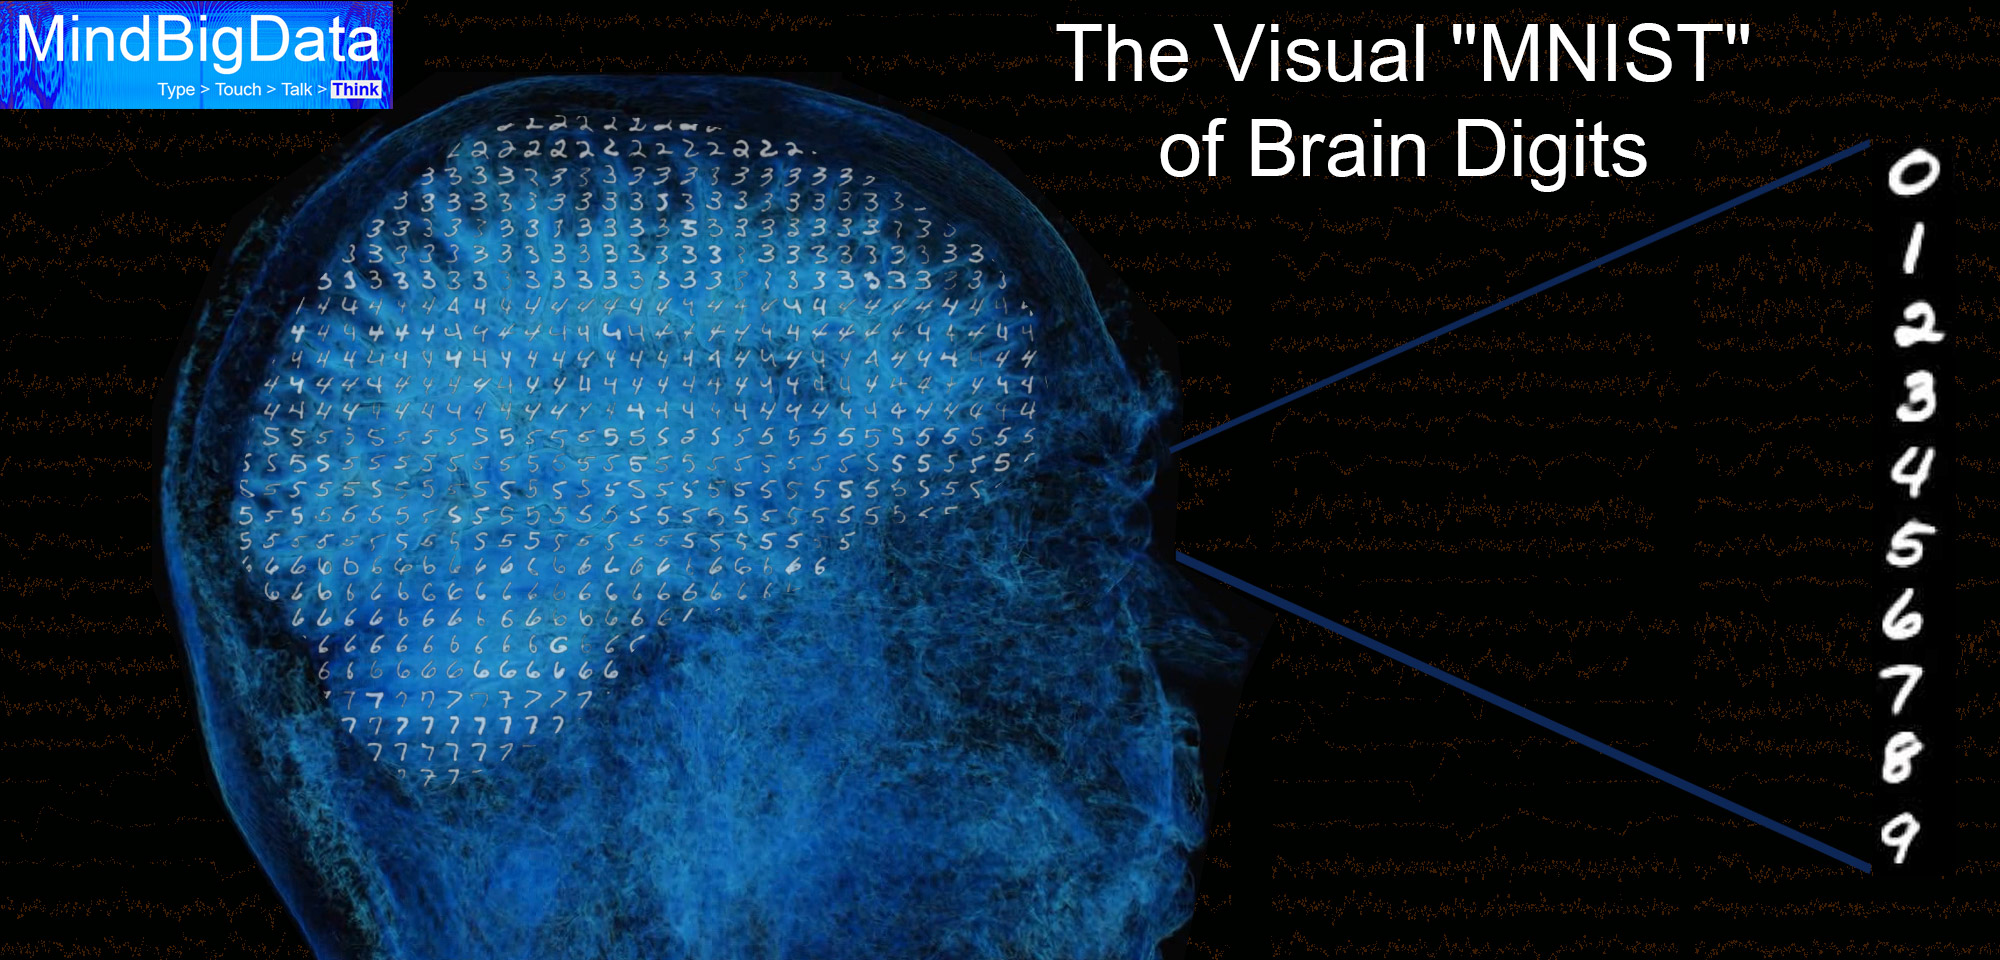 Visal MNIST of Brain Digits